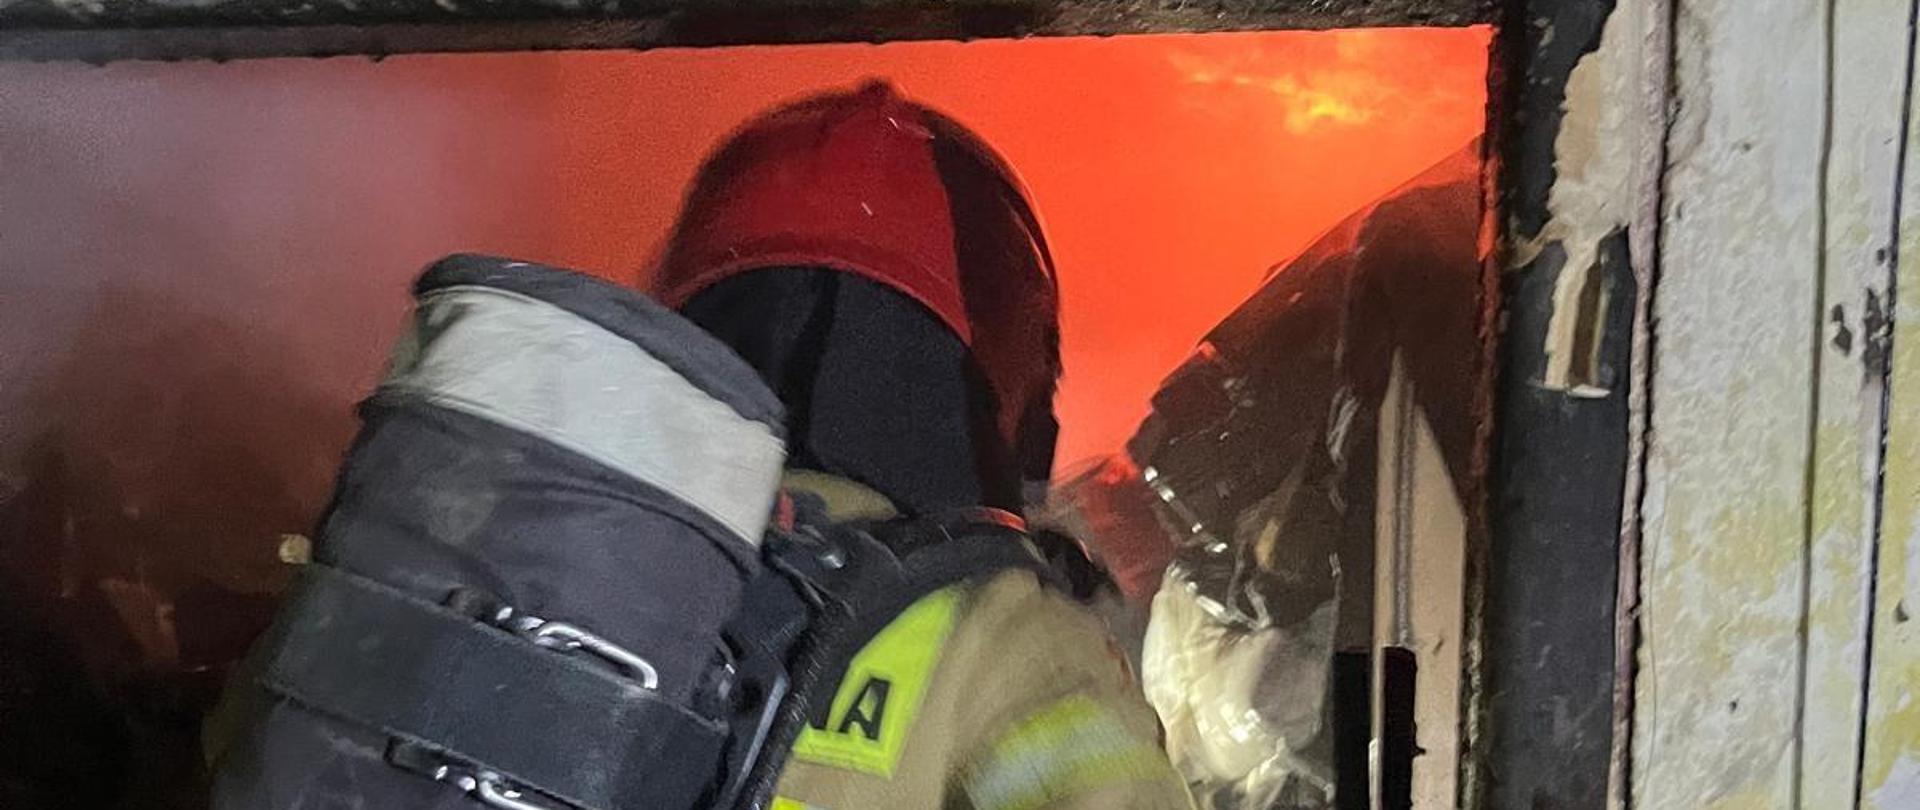 Strażak pracuje wewnątrz spalonego pomieszczenia. Przed nim widać płomienie ognia. 